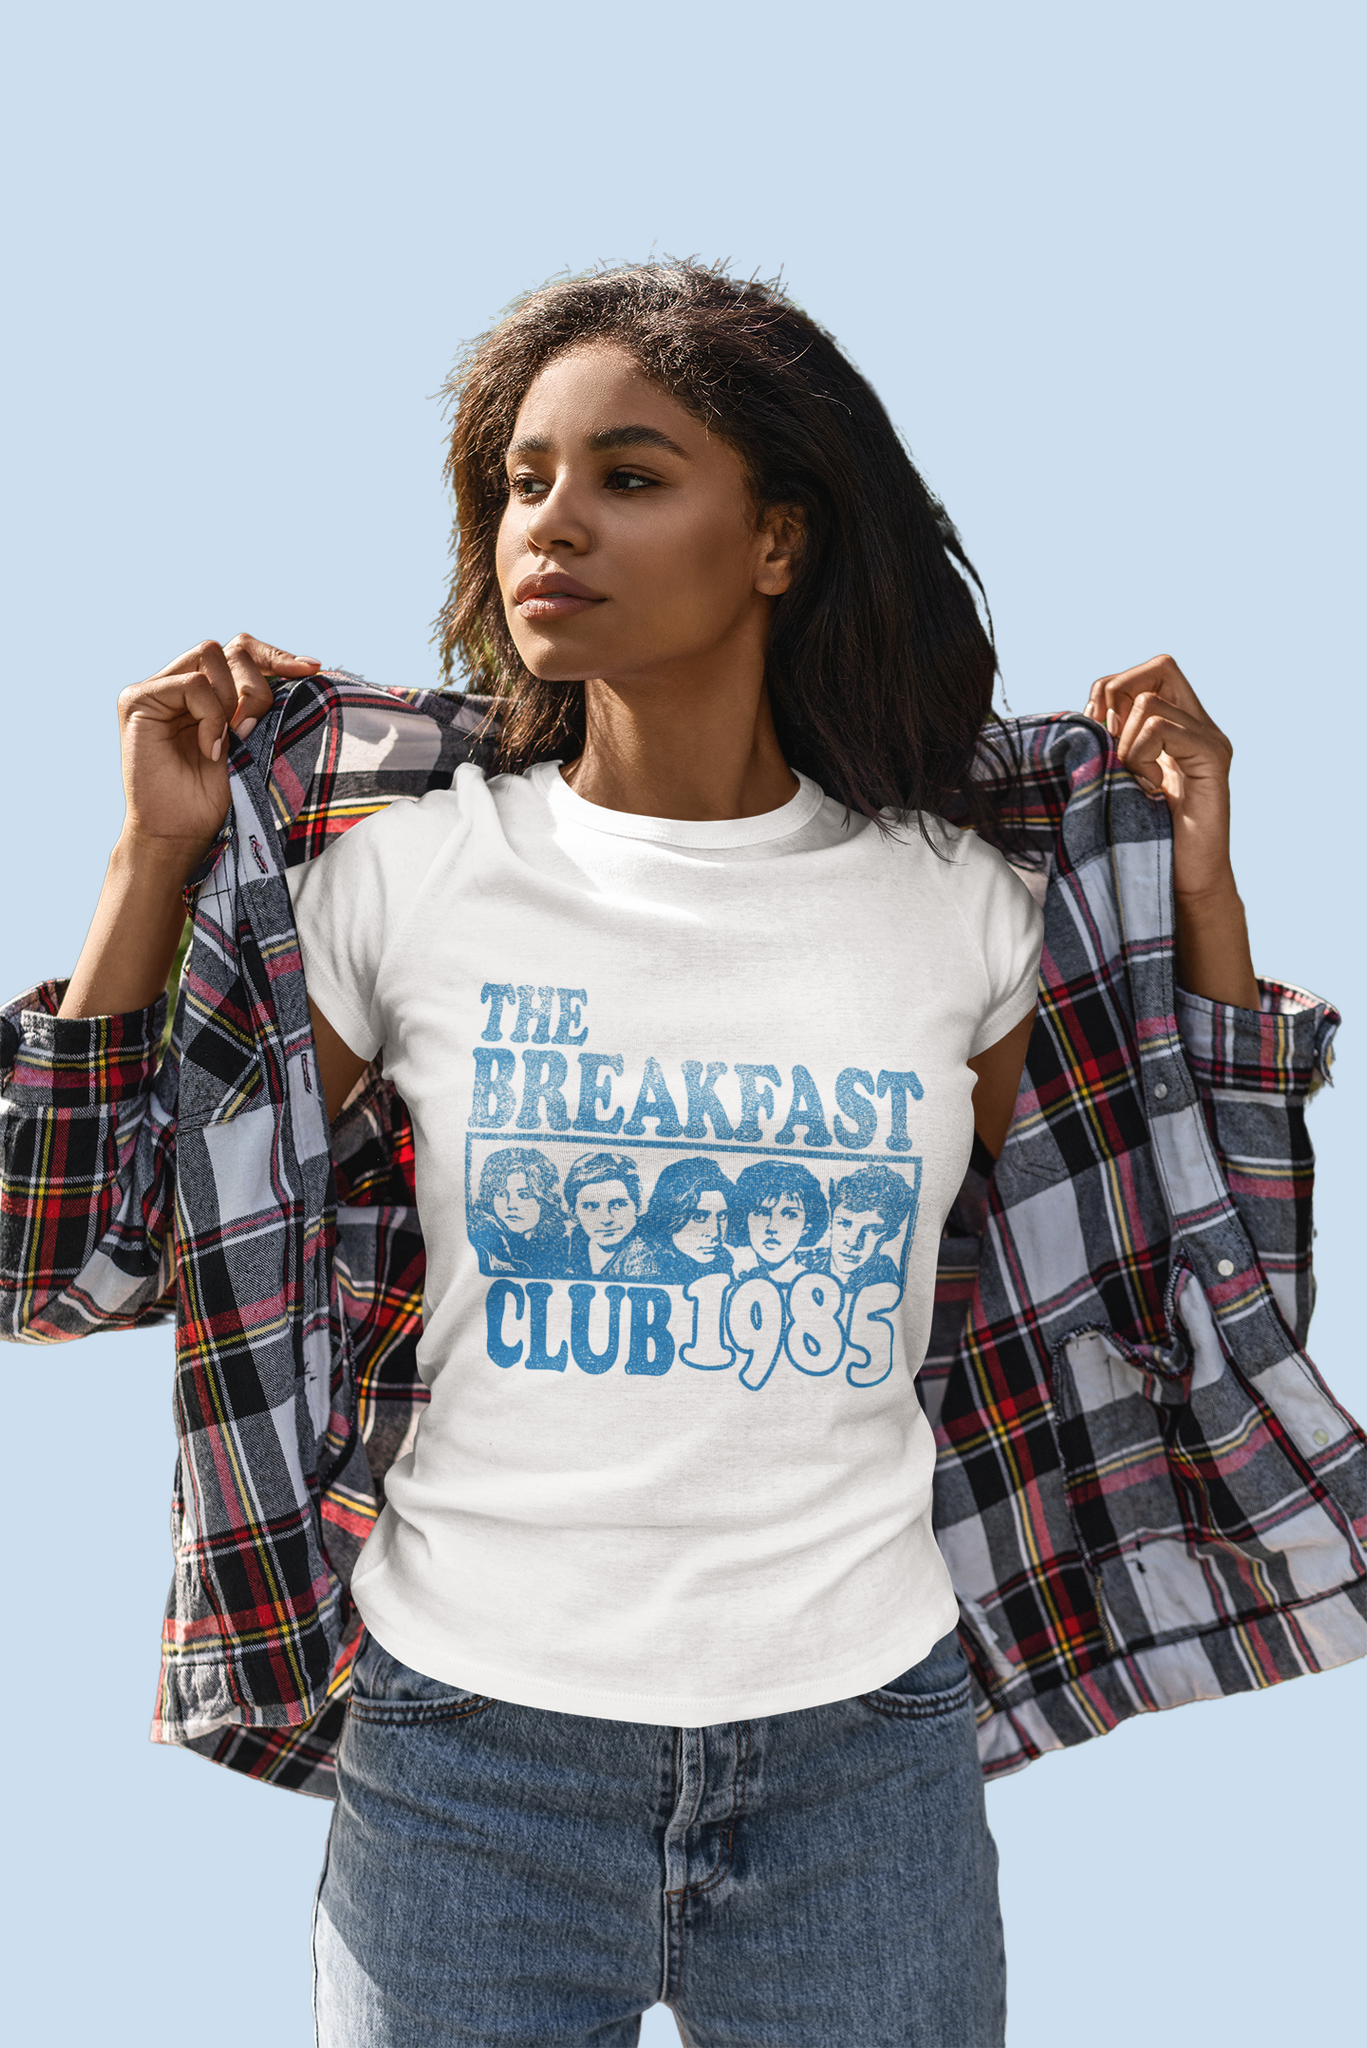 Breakfast Club T Shirt, The Breakfast Club 1985 Character T Shirt